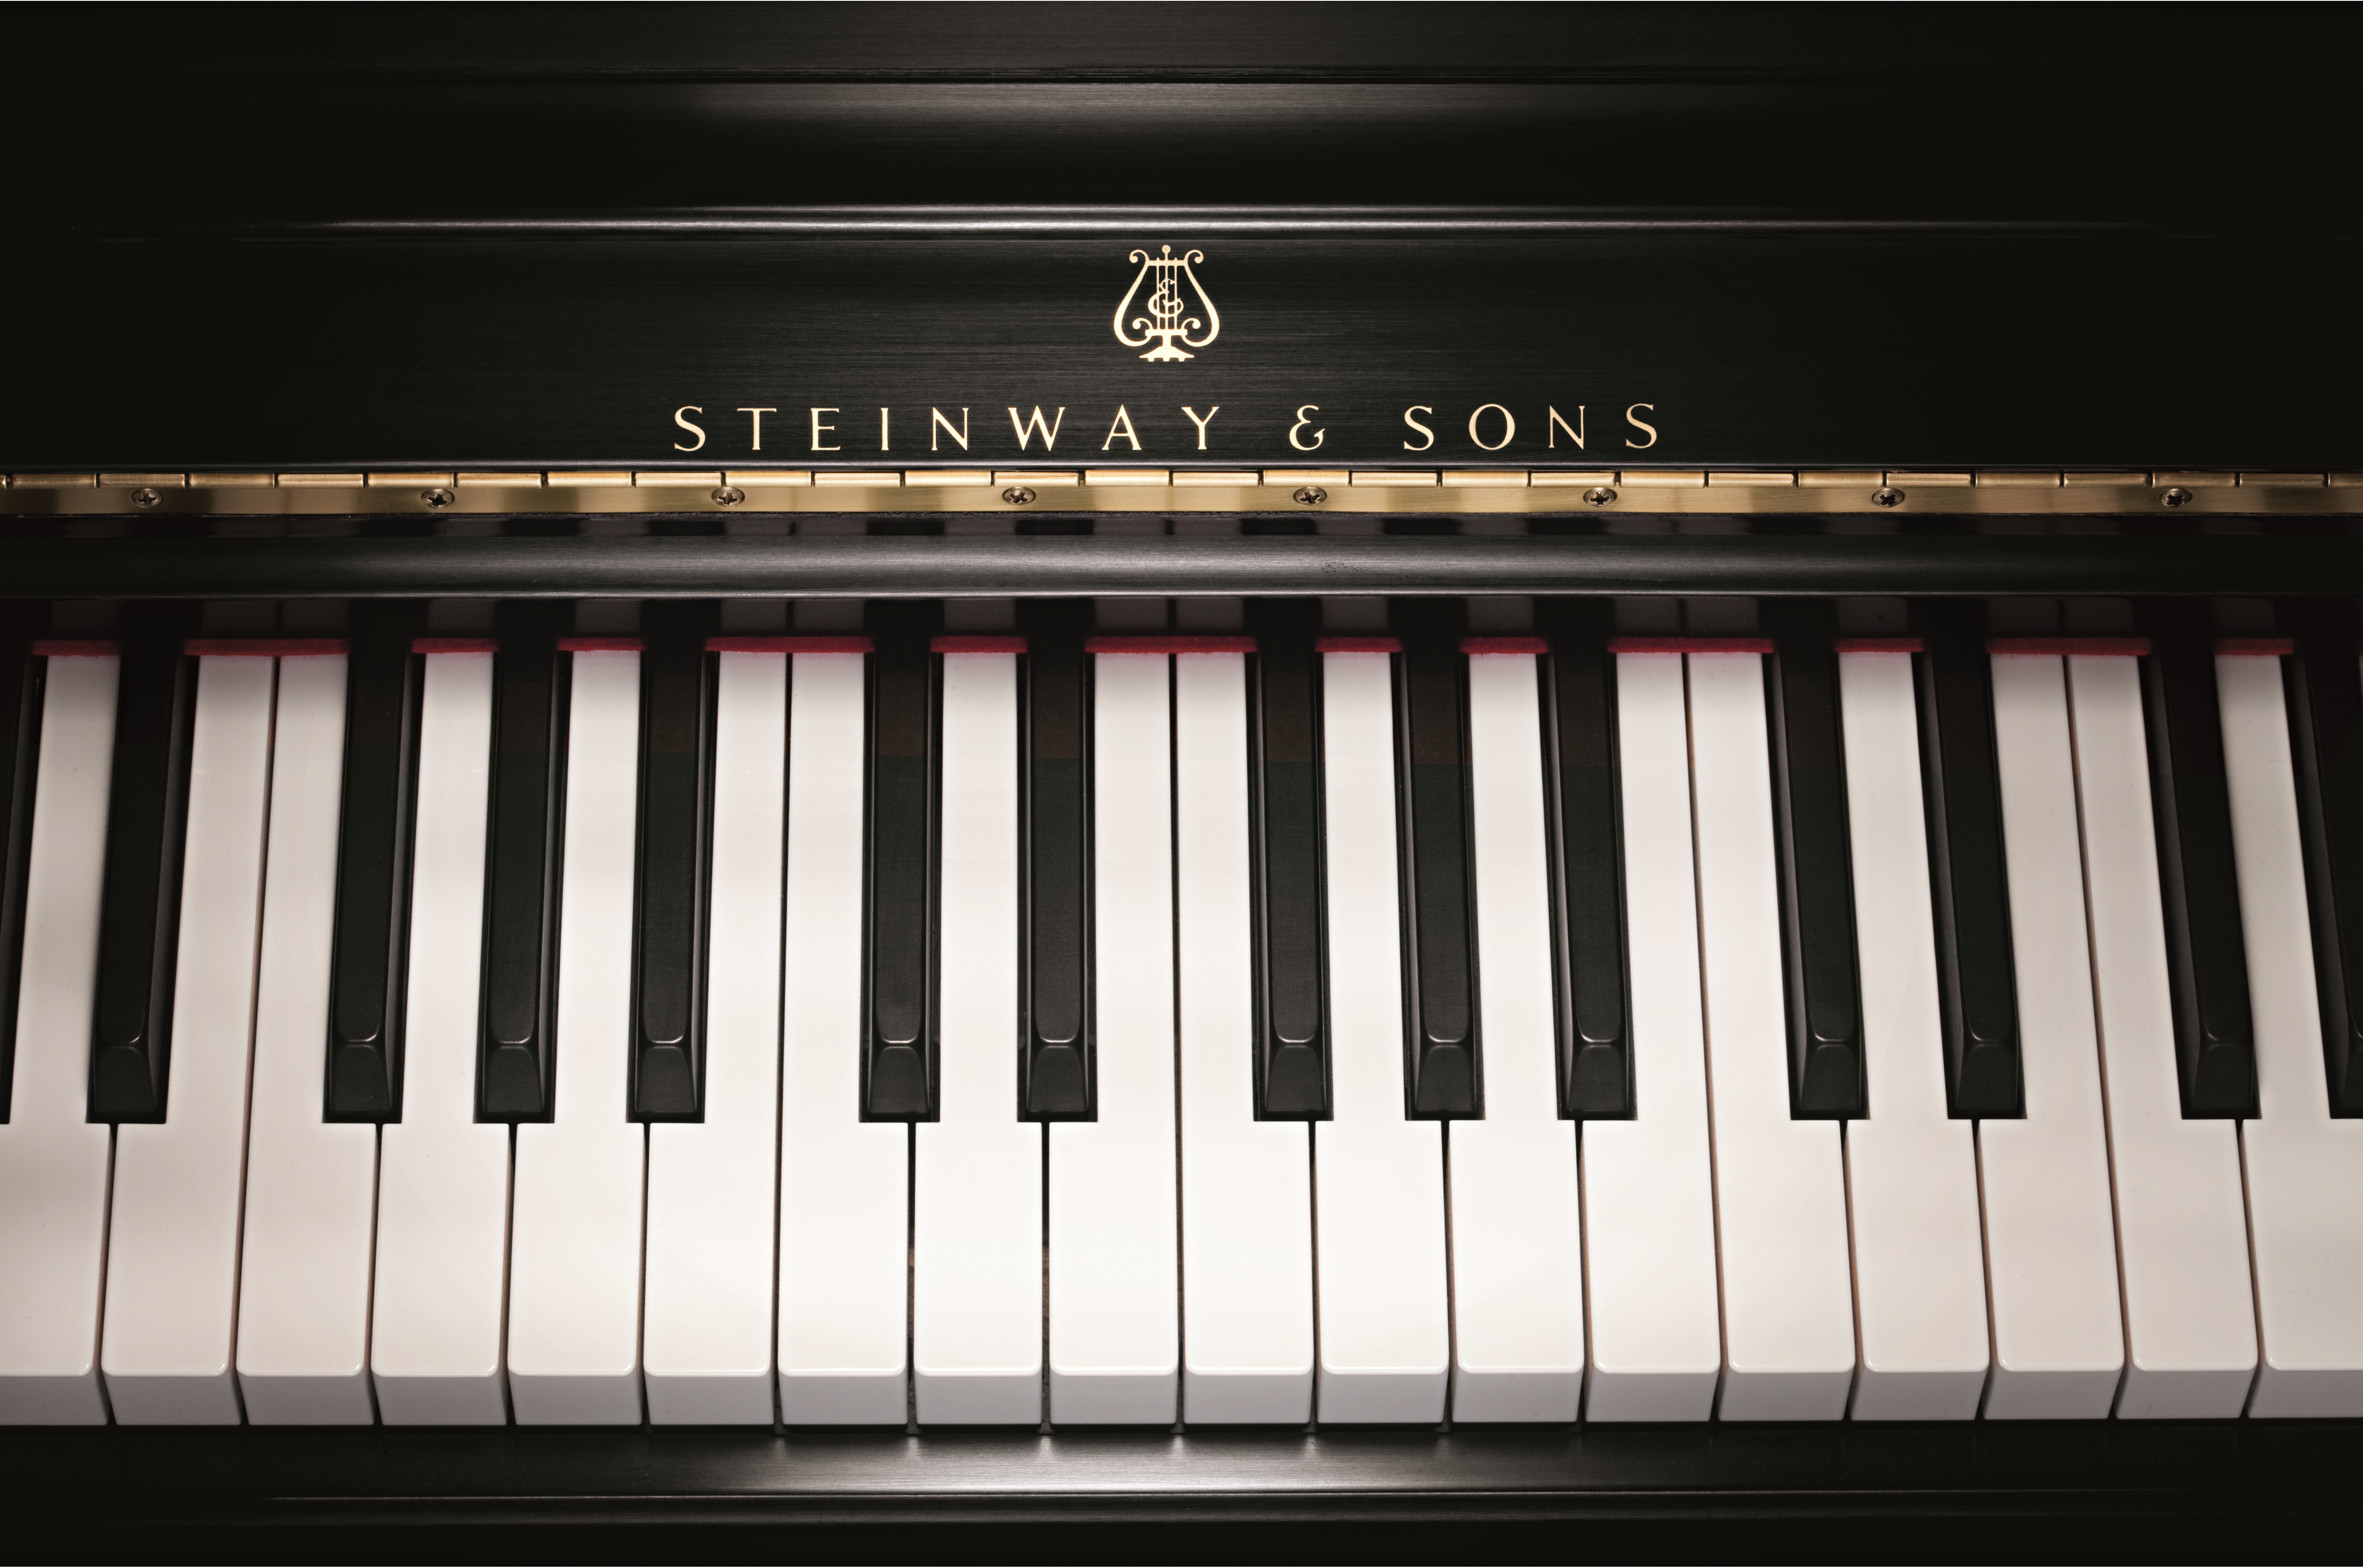 Фортепиано клавиши рояля Стейнвей